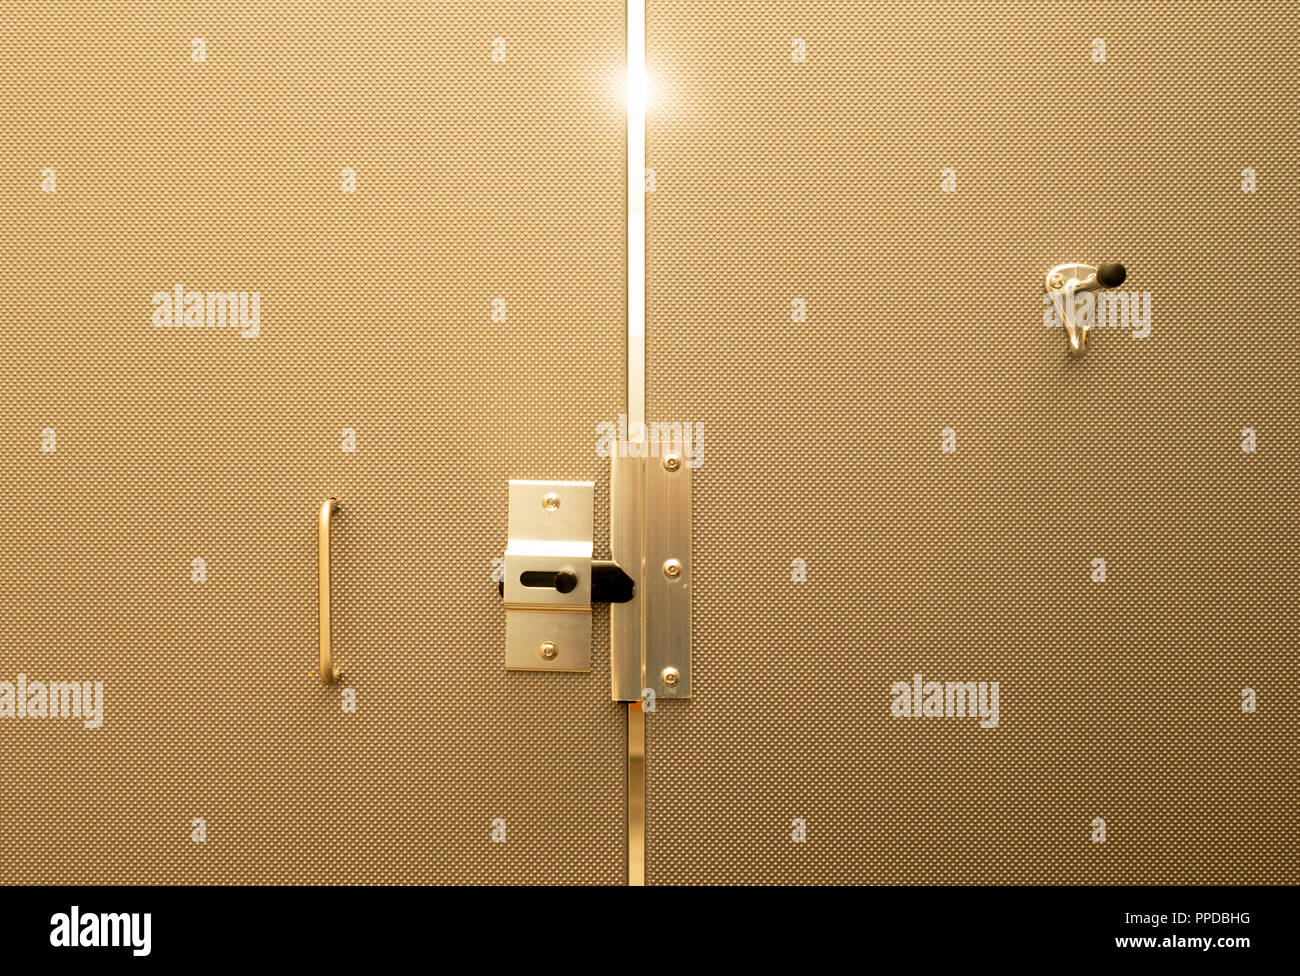 La luz se filtra a través de las puertas con un diseño muy bonito montado y tonificado el baño Foto de stock